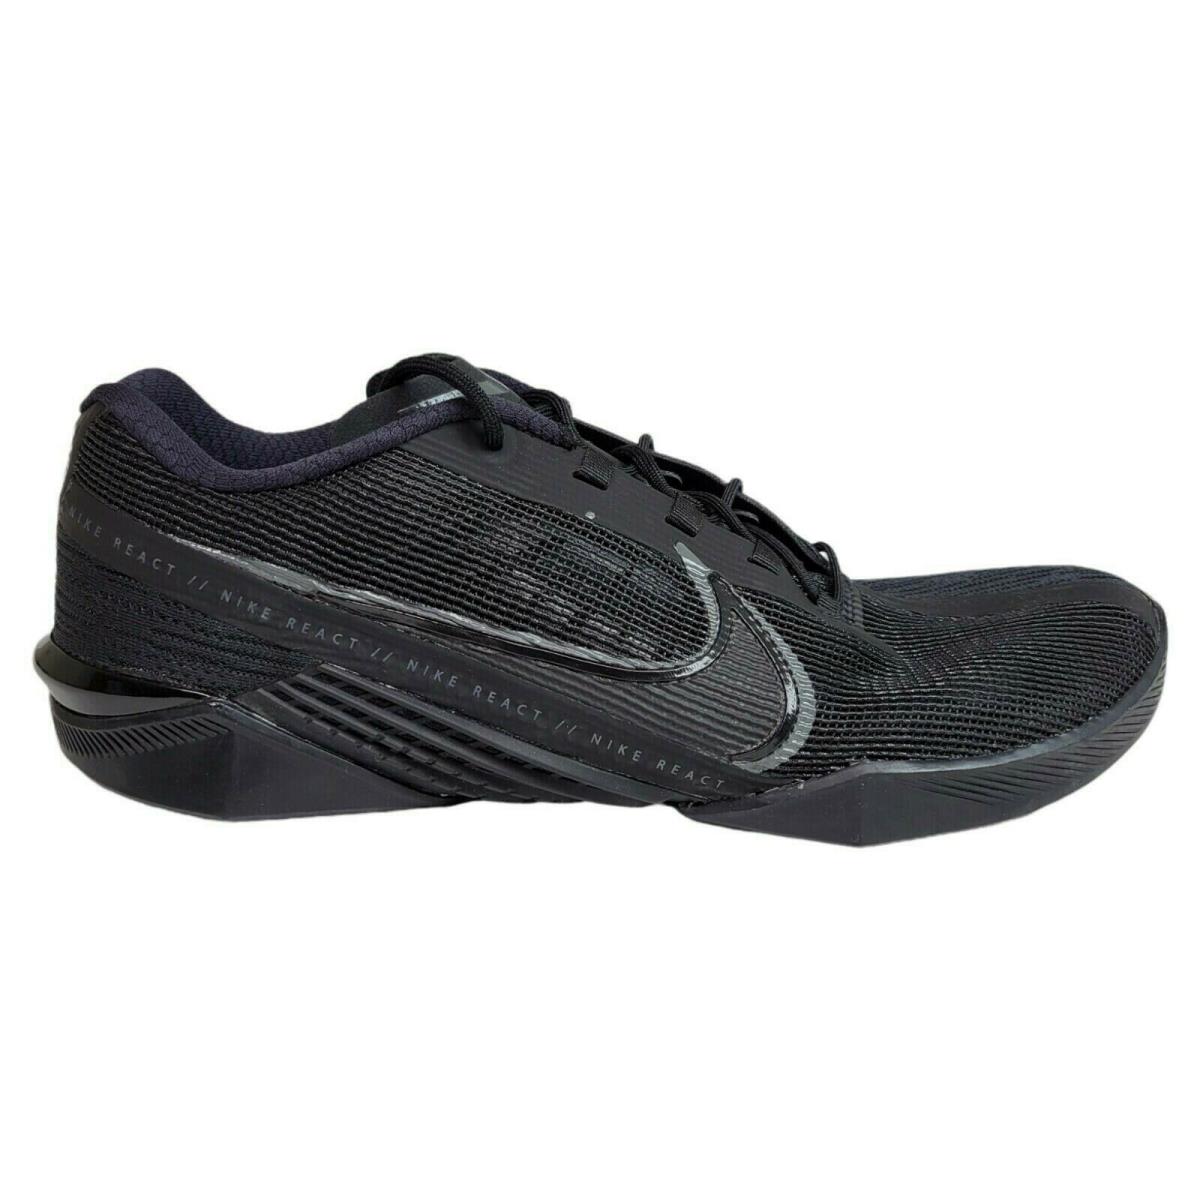 Nike Mens 12.5 React Metcon Turbo Black Gym Training Crossfit Shoes CT1243-002